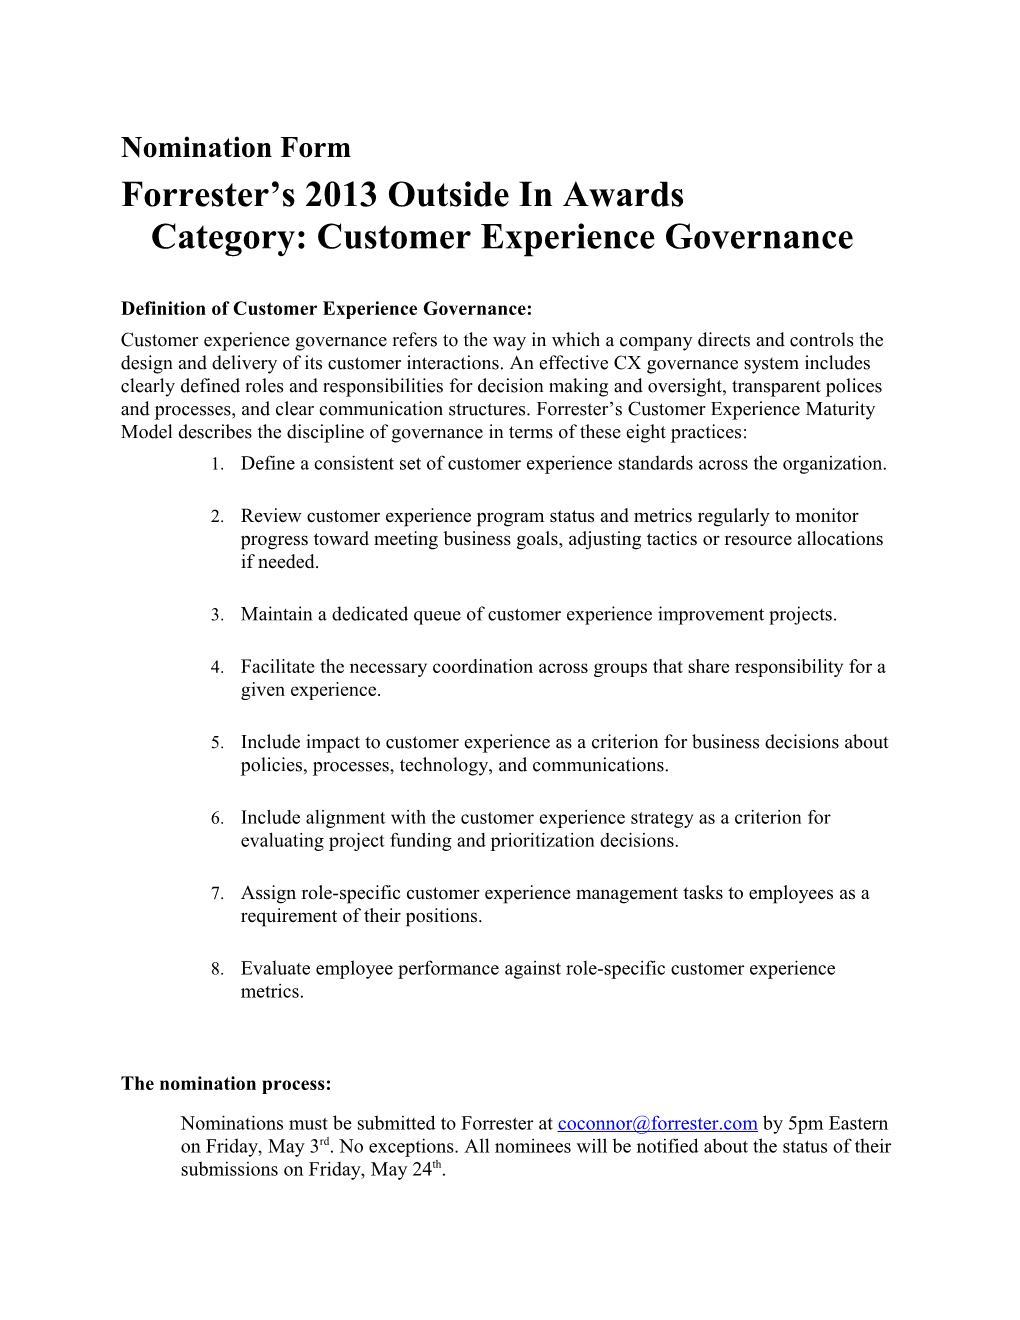 Forrester Outsidein Awards 2013 - CX Governance - Nomination Form - V1